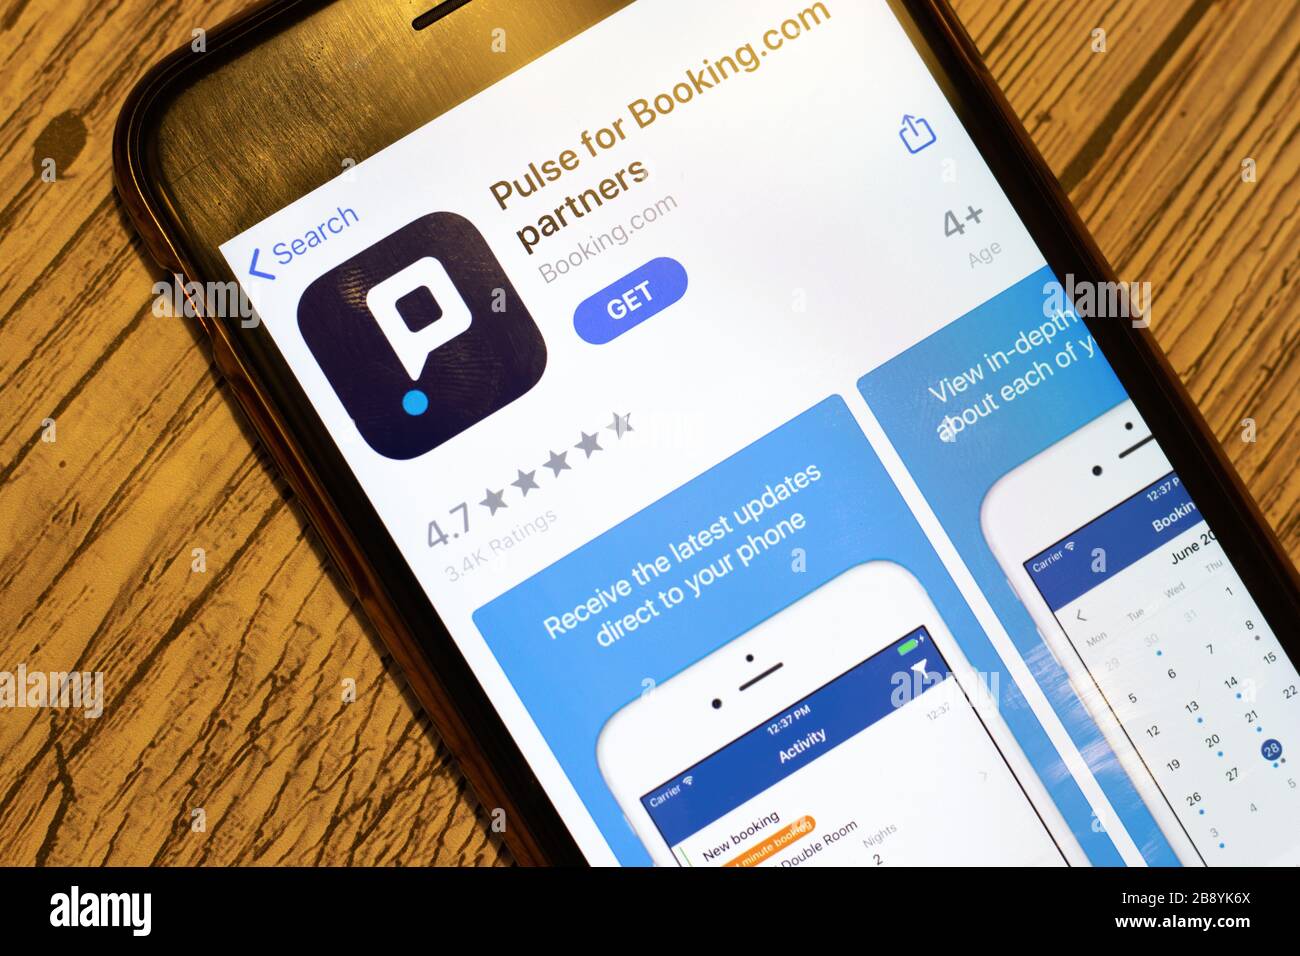 Los Angeles, Californie, États-Unis - 24 mars 2020: Vue de dessus de l'écran du téléphone avec l'icône du logo Pulse for Booking.com Partners sur l'App Store, illustratif Banque D'Images